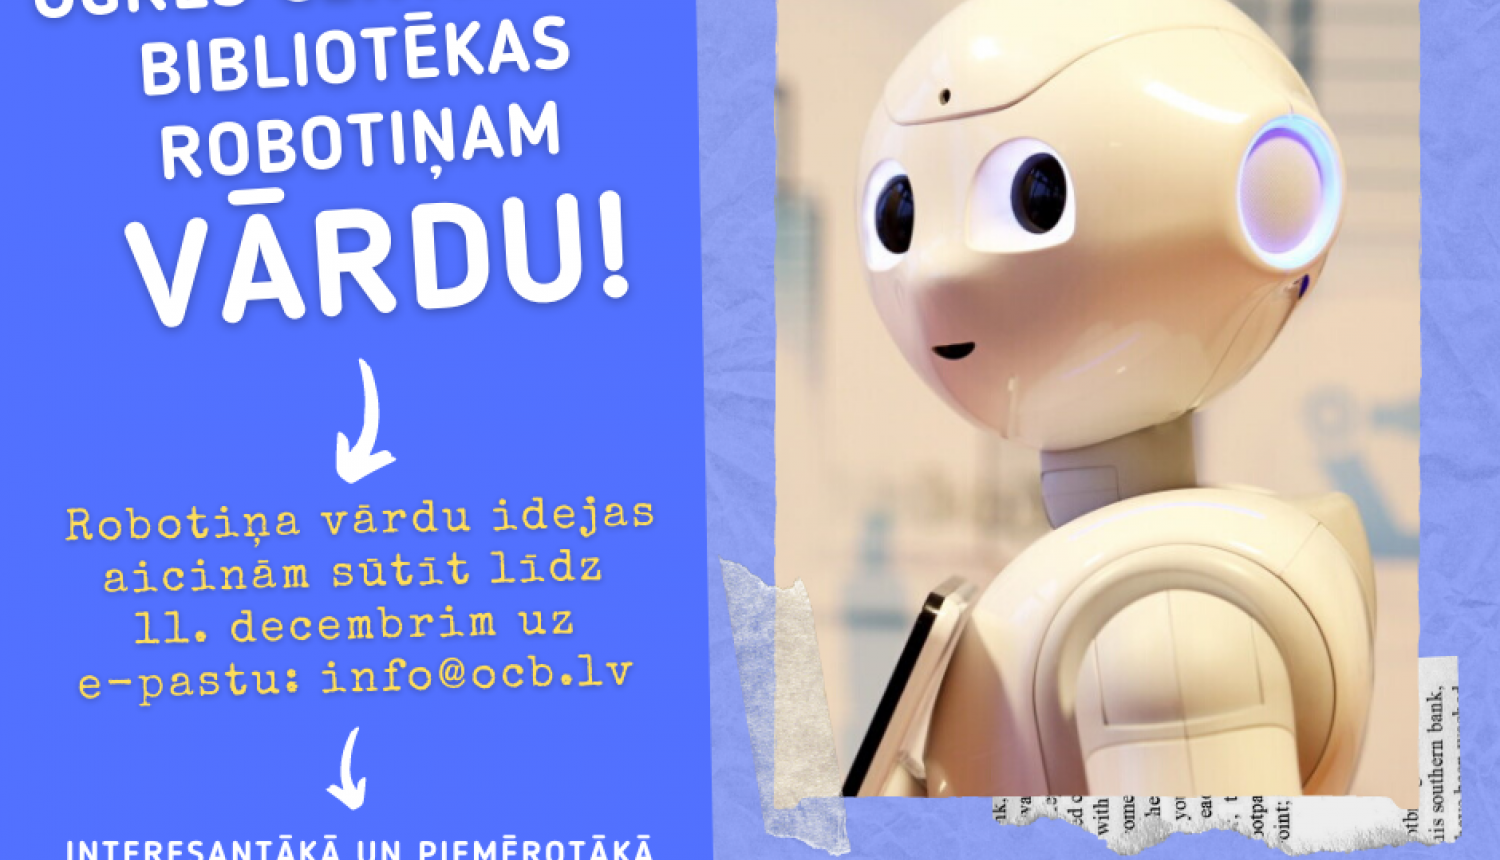 Izsludinām konkursu par bibliotēkas robotiņa vārdu!